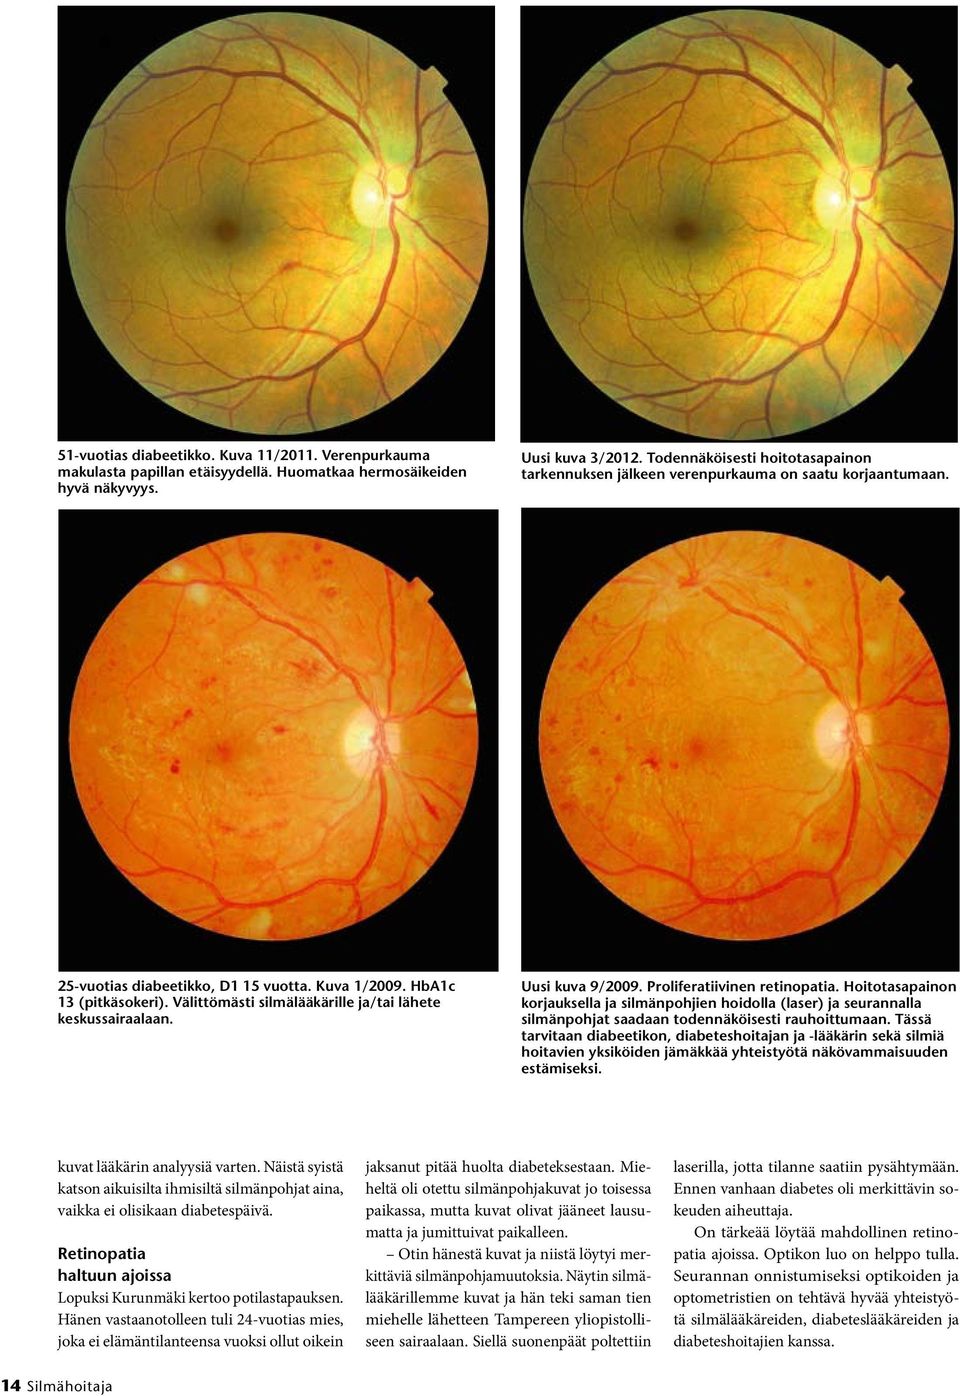 Välittömästi silmälääkärille ja/tai lähete keskussairaalaan. Uusi kuva 9/2009. Proliferatiivinen retinopatia.